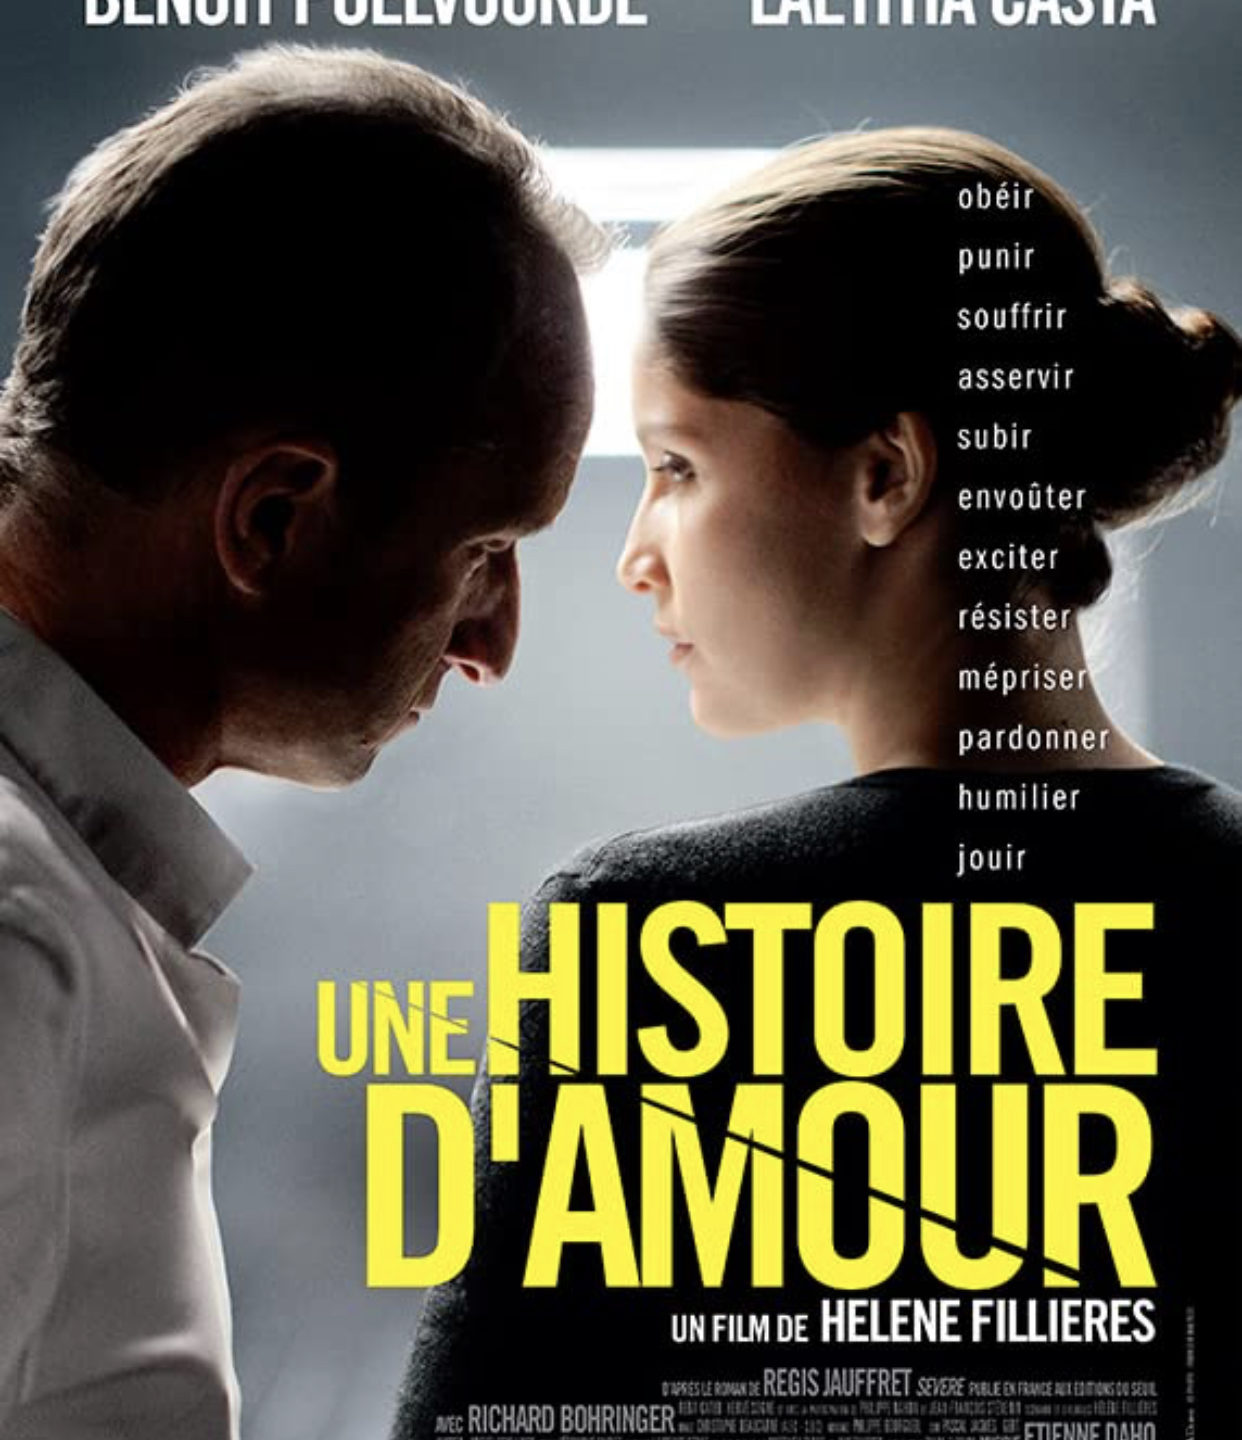 Tied (Une histoire d’amour) – 2013 film